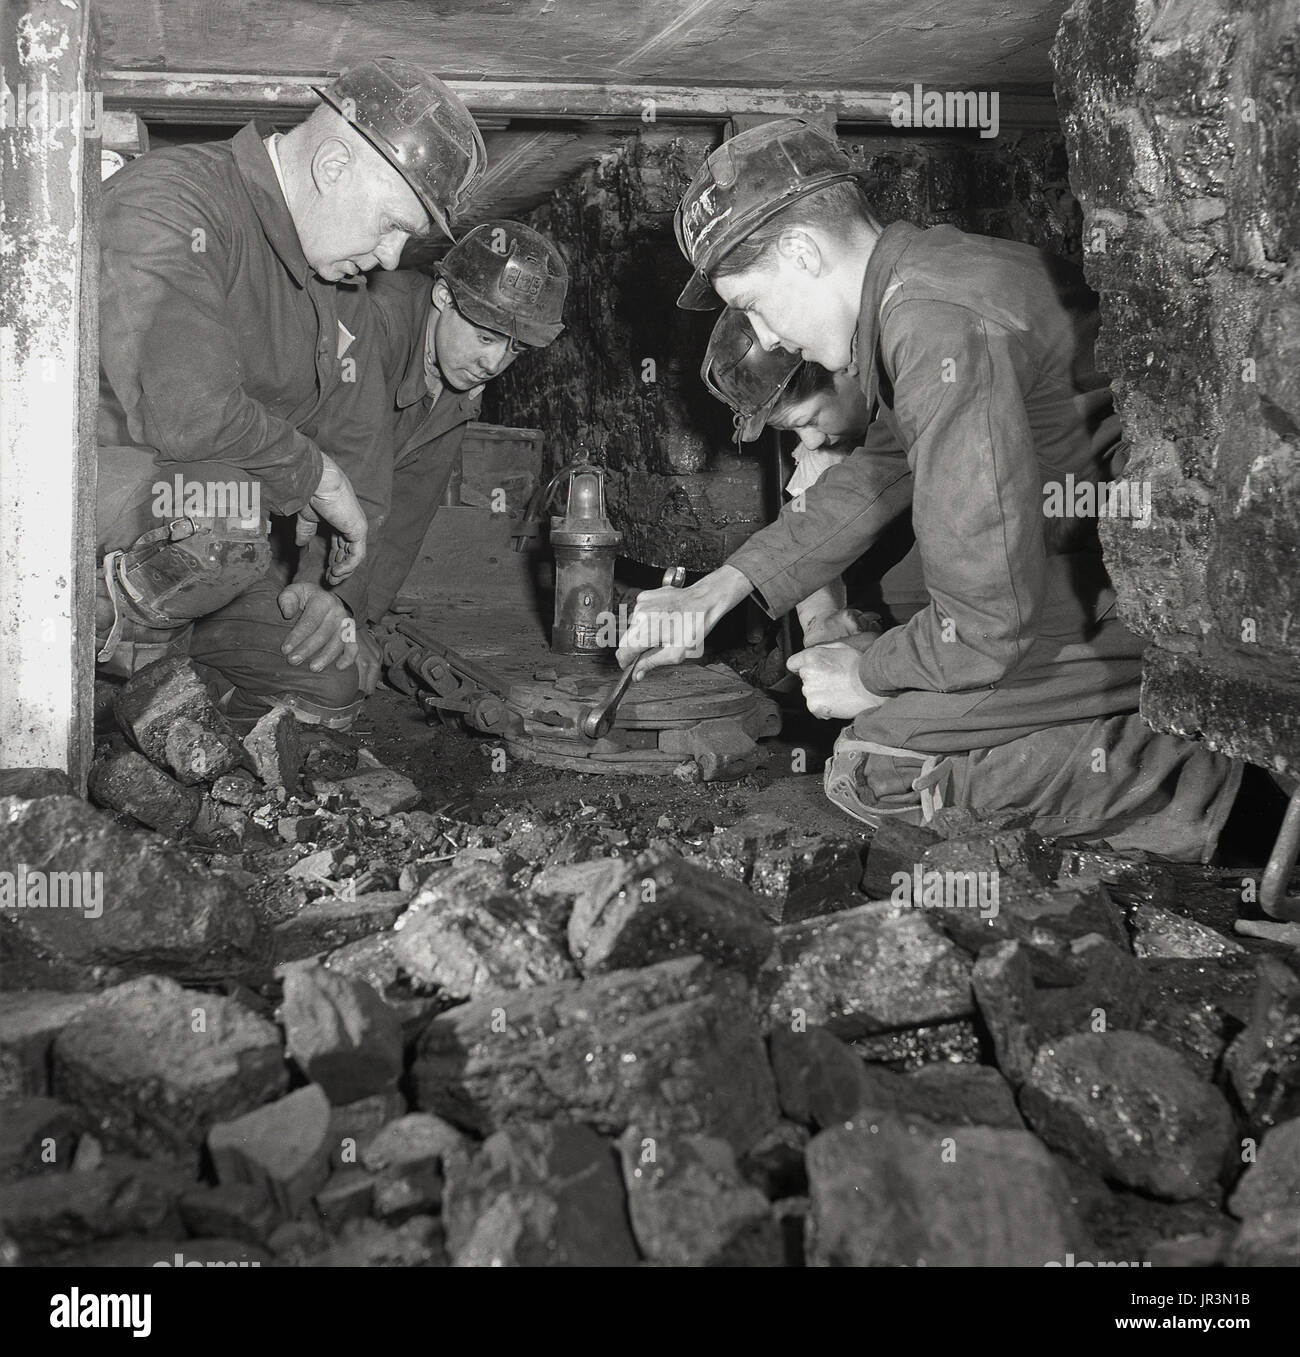 1948, storico Inghilterra, giovane apprendista di data mining o partecipante utilizza una chiave per serrare i bulloni su un metallo engineeing attrezzo sotto l'occhio vigile del suo supervisore o tuitor. Foto Stock